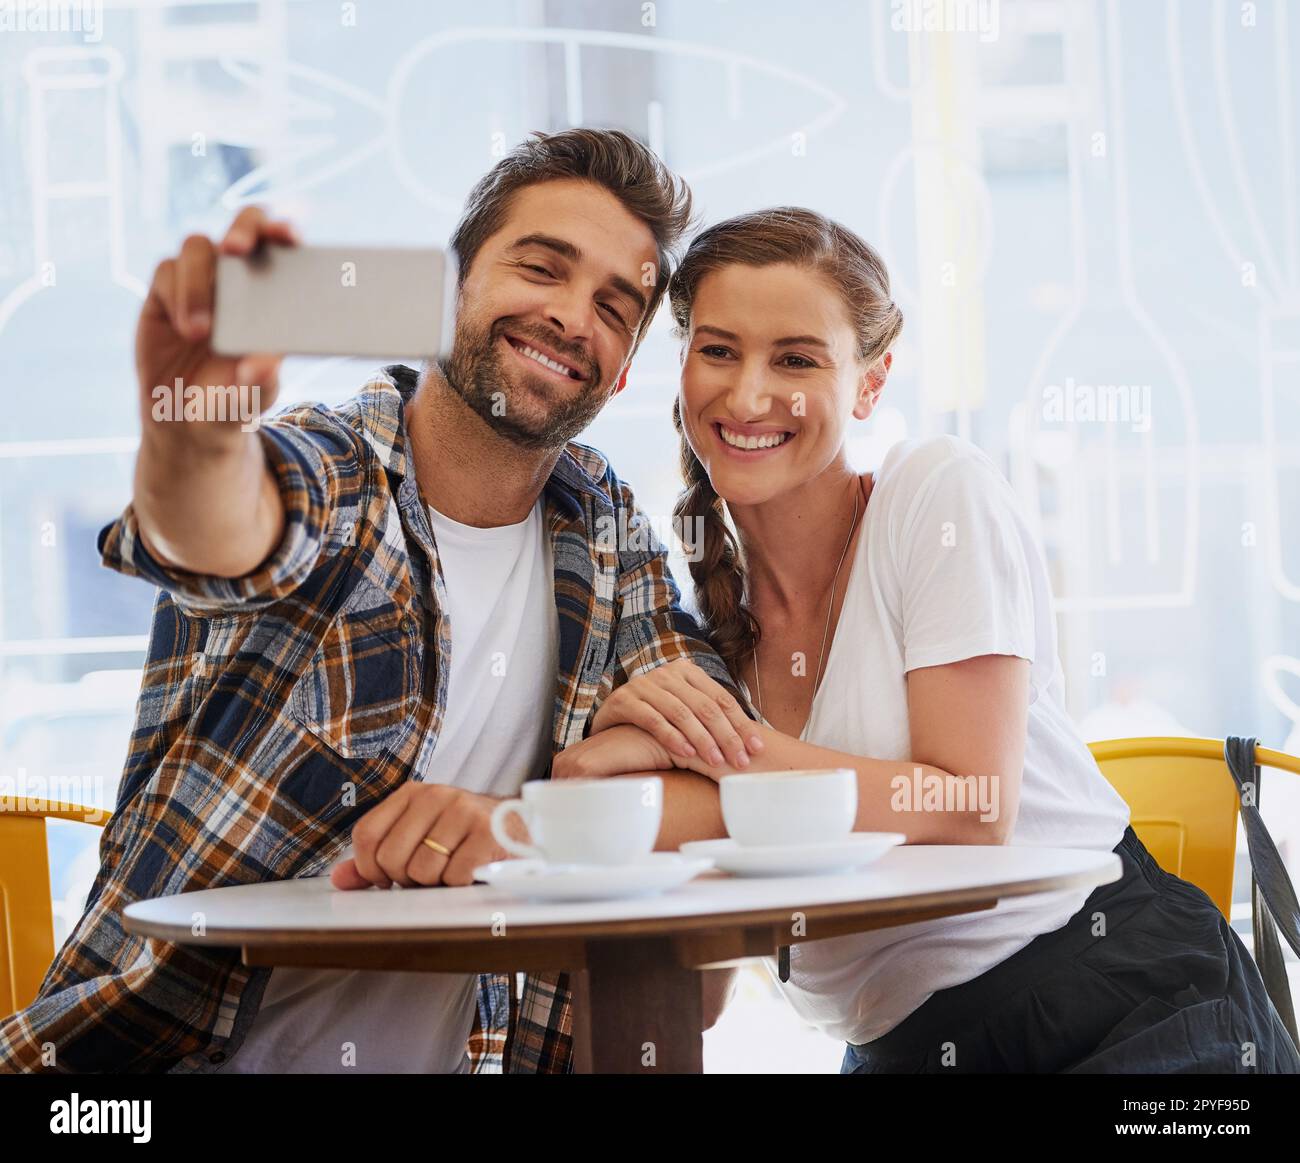 Theyre non selfie timido. una giovane coppia felice in posa per un selfie insieme in una caffetteria. Foto Stock